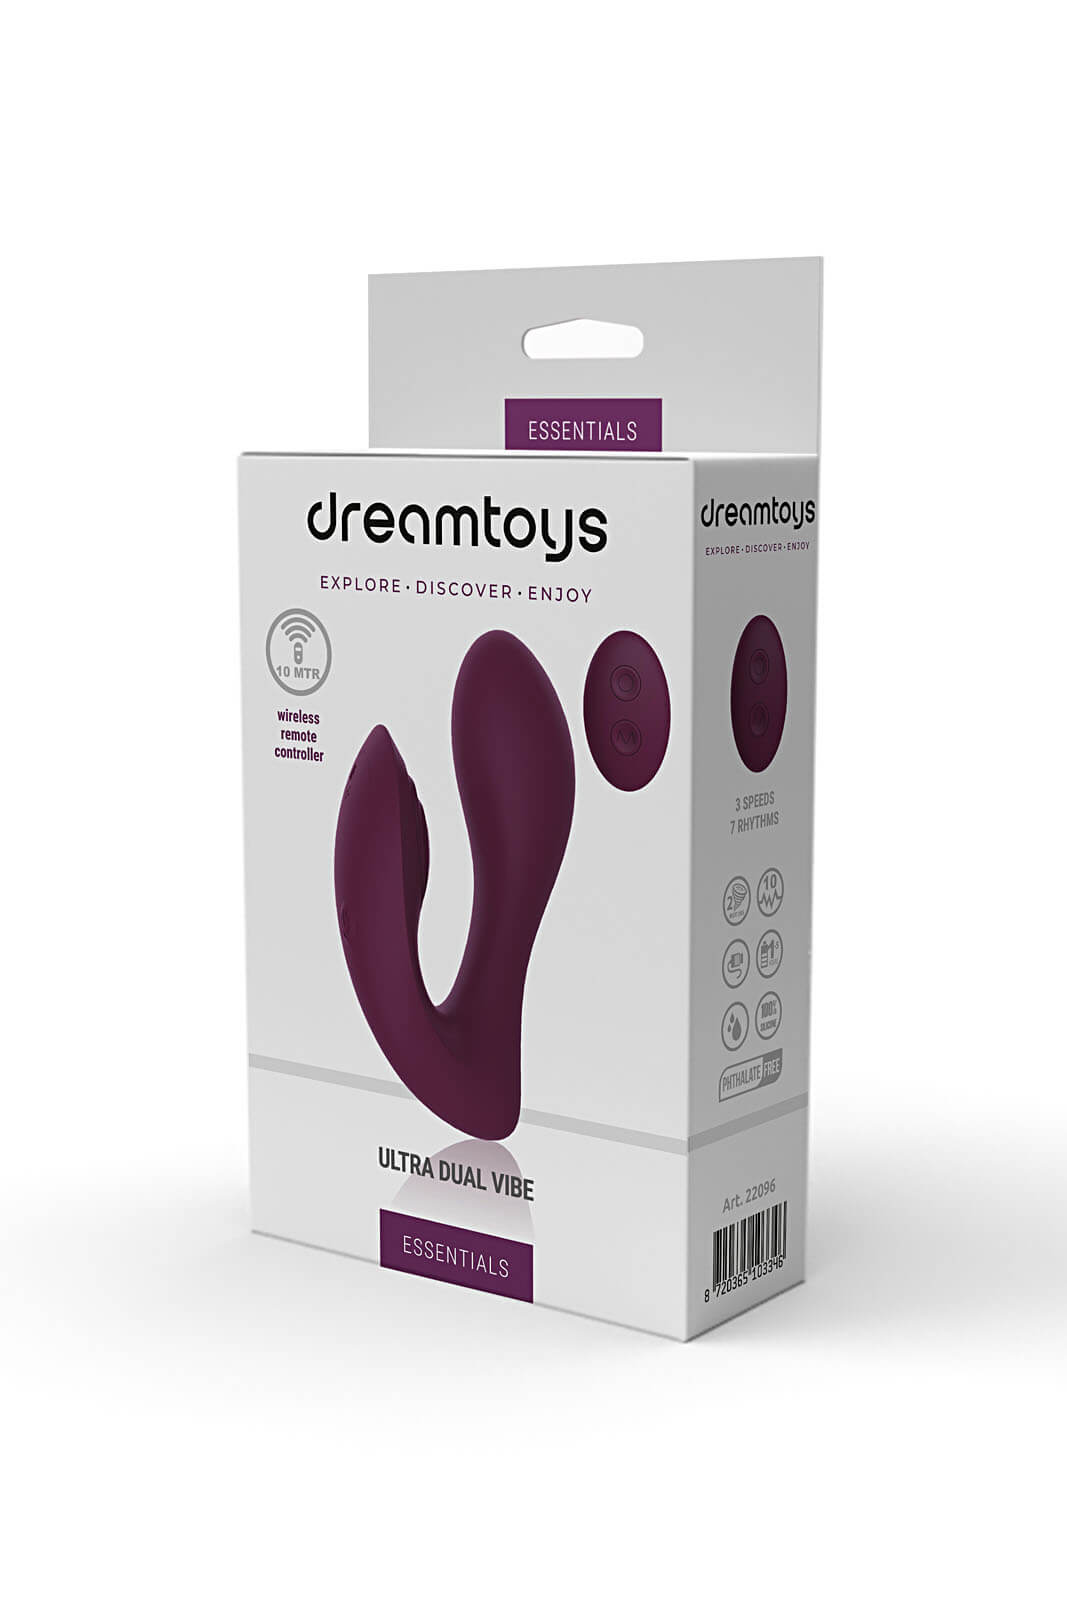 Dream Toys Essentials Ultra Dual Vibe (Purple), dvojitý vibrátor s ovladačem